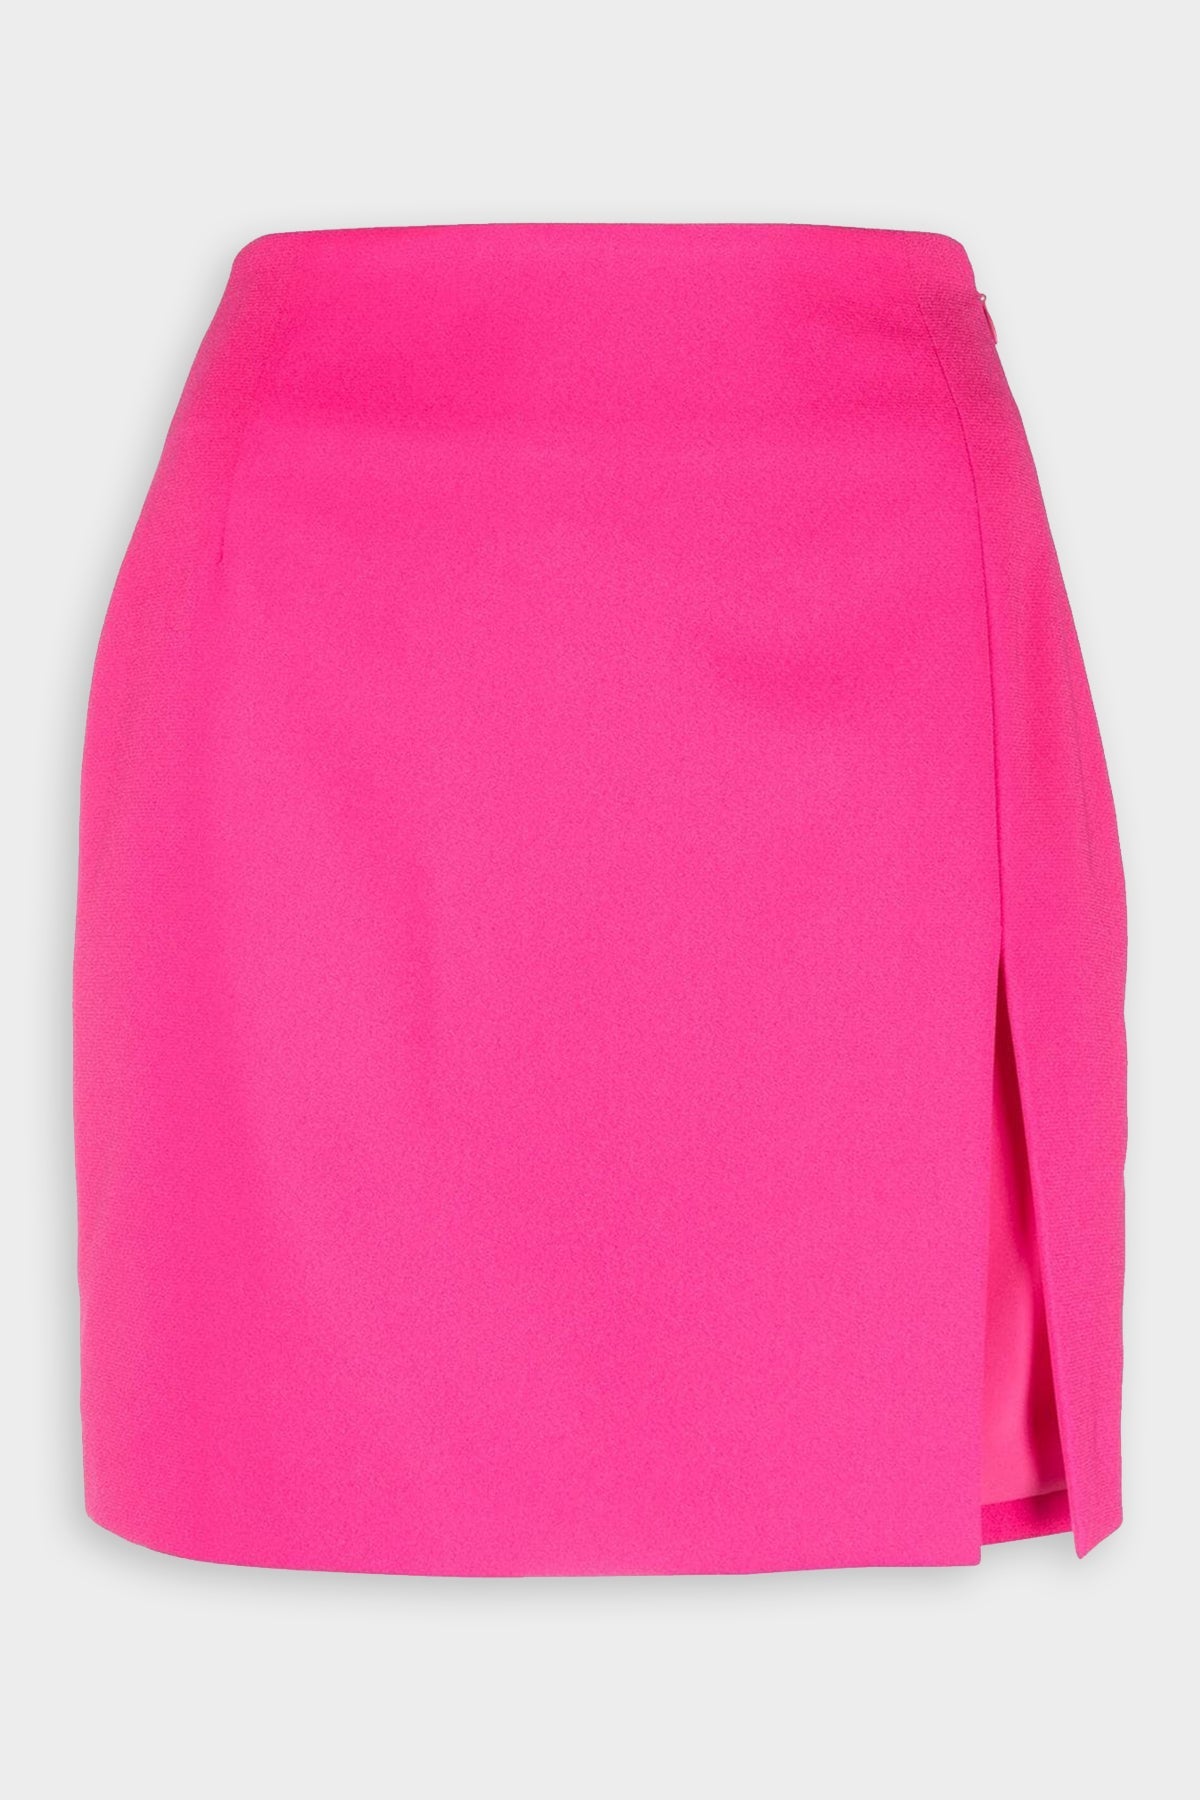 Gioia Mini Skirt in Fuchsia - shop-olivia.com